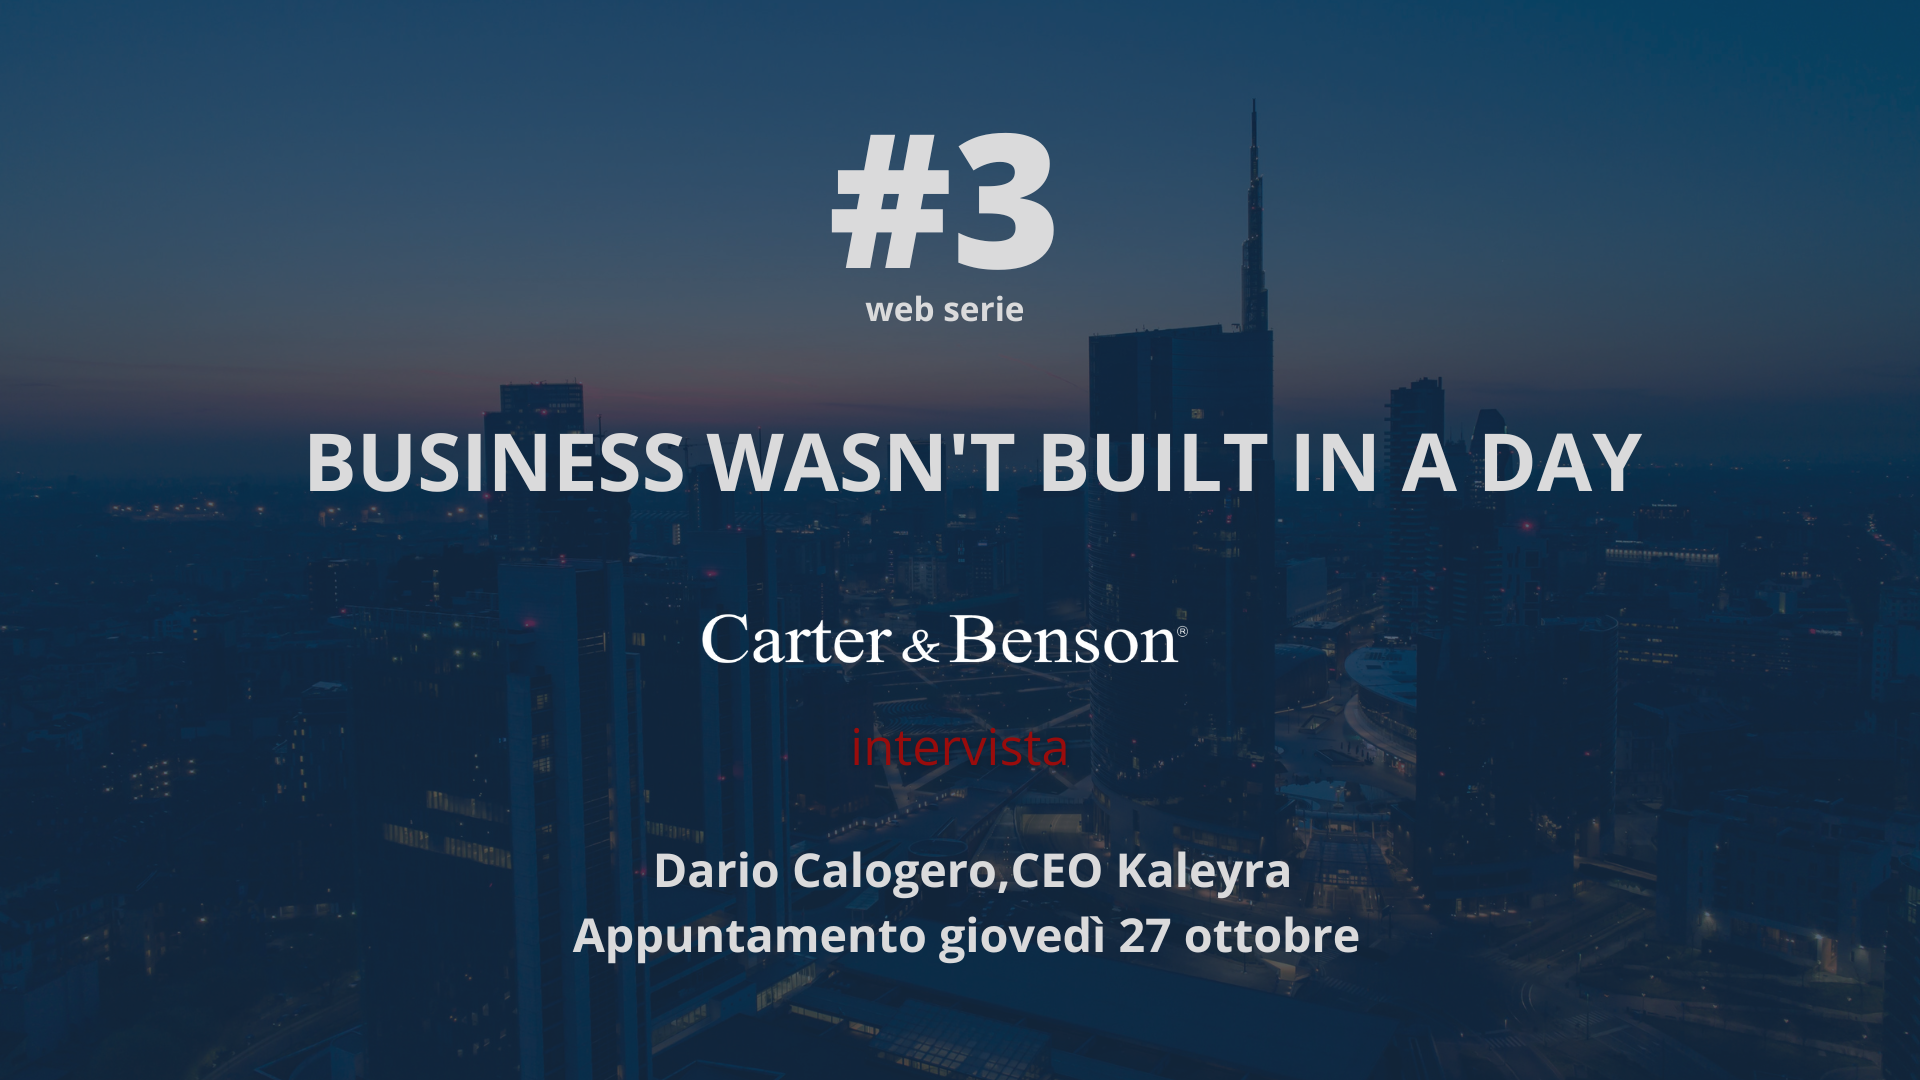 BUSINESS WASN'T BUILT IN A DAY - CARTER & BENSON - INTERVISTA A KALEYRA